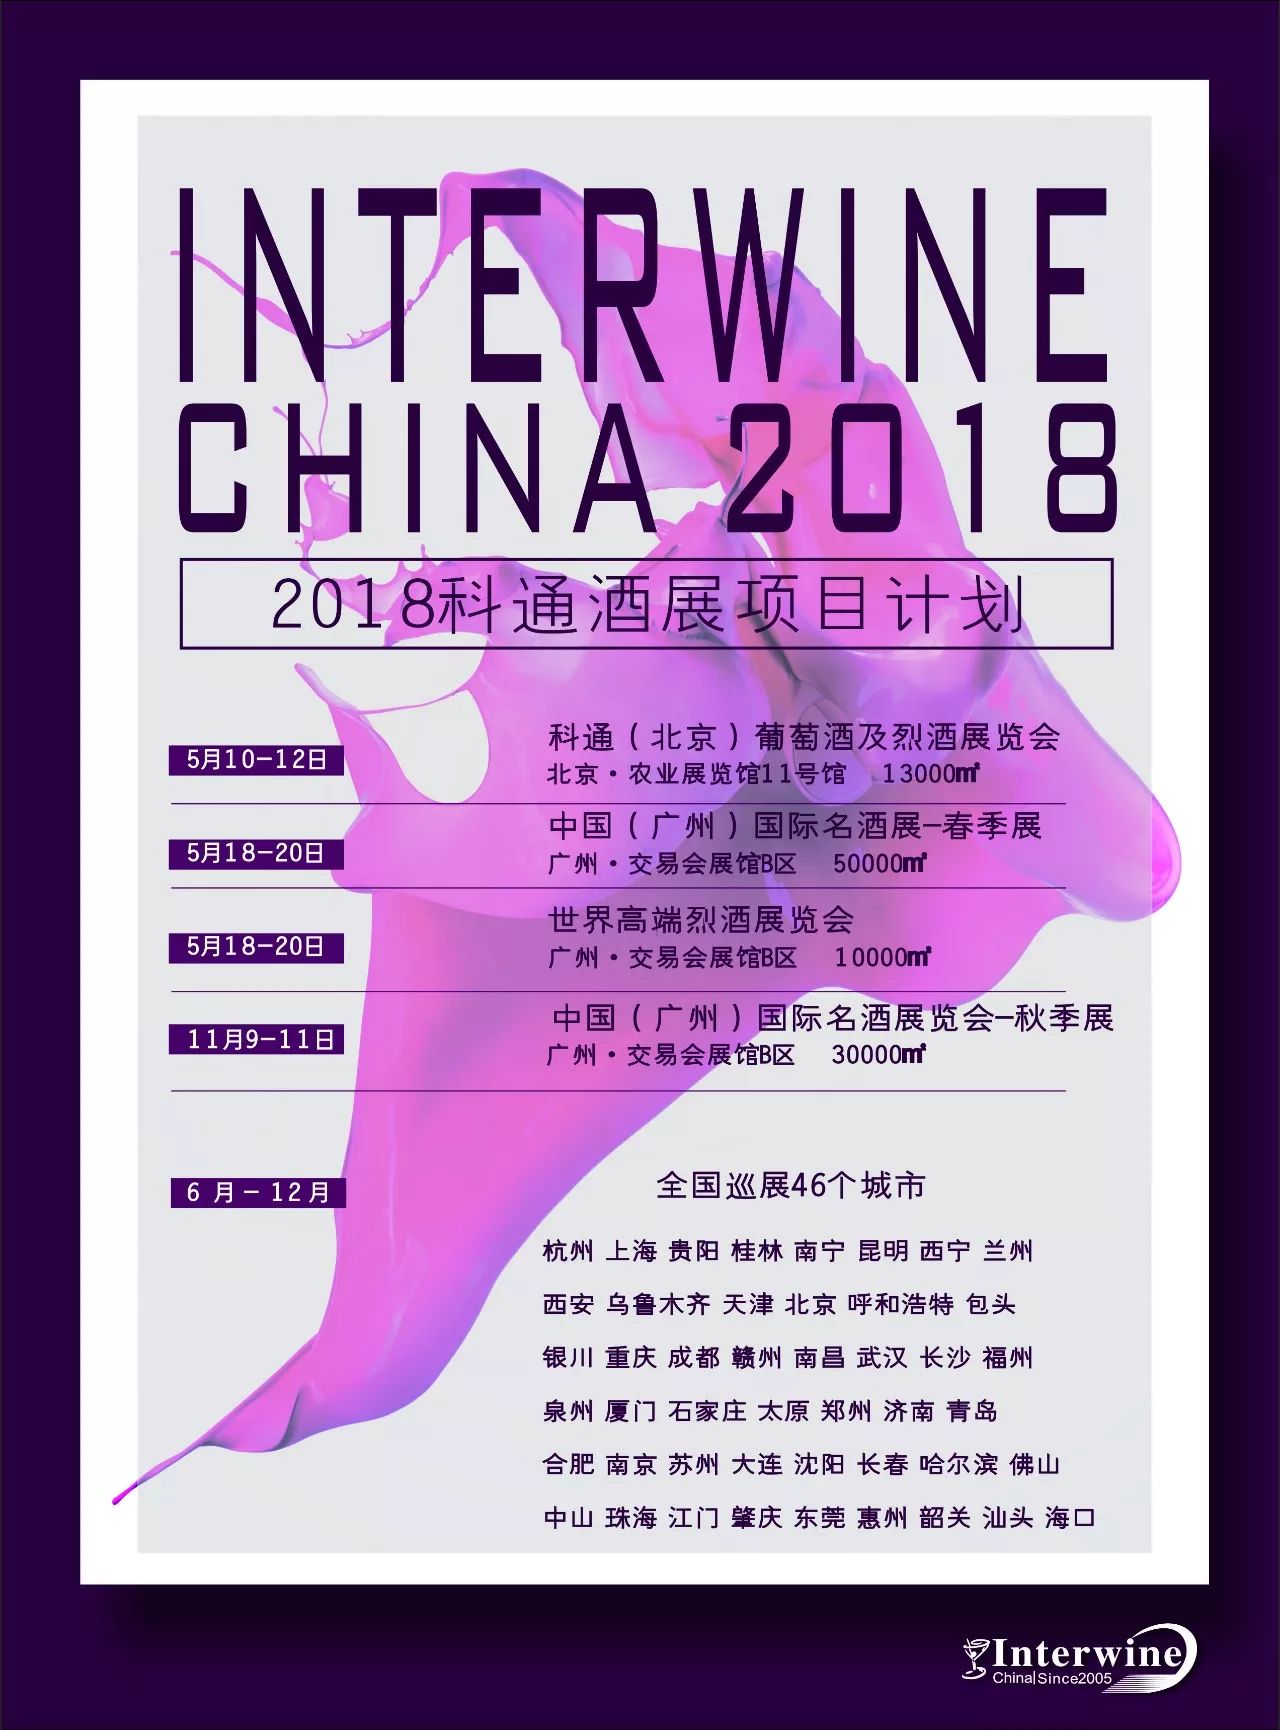 Interwine china2018